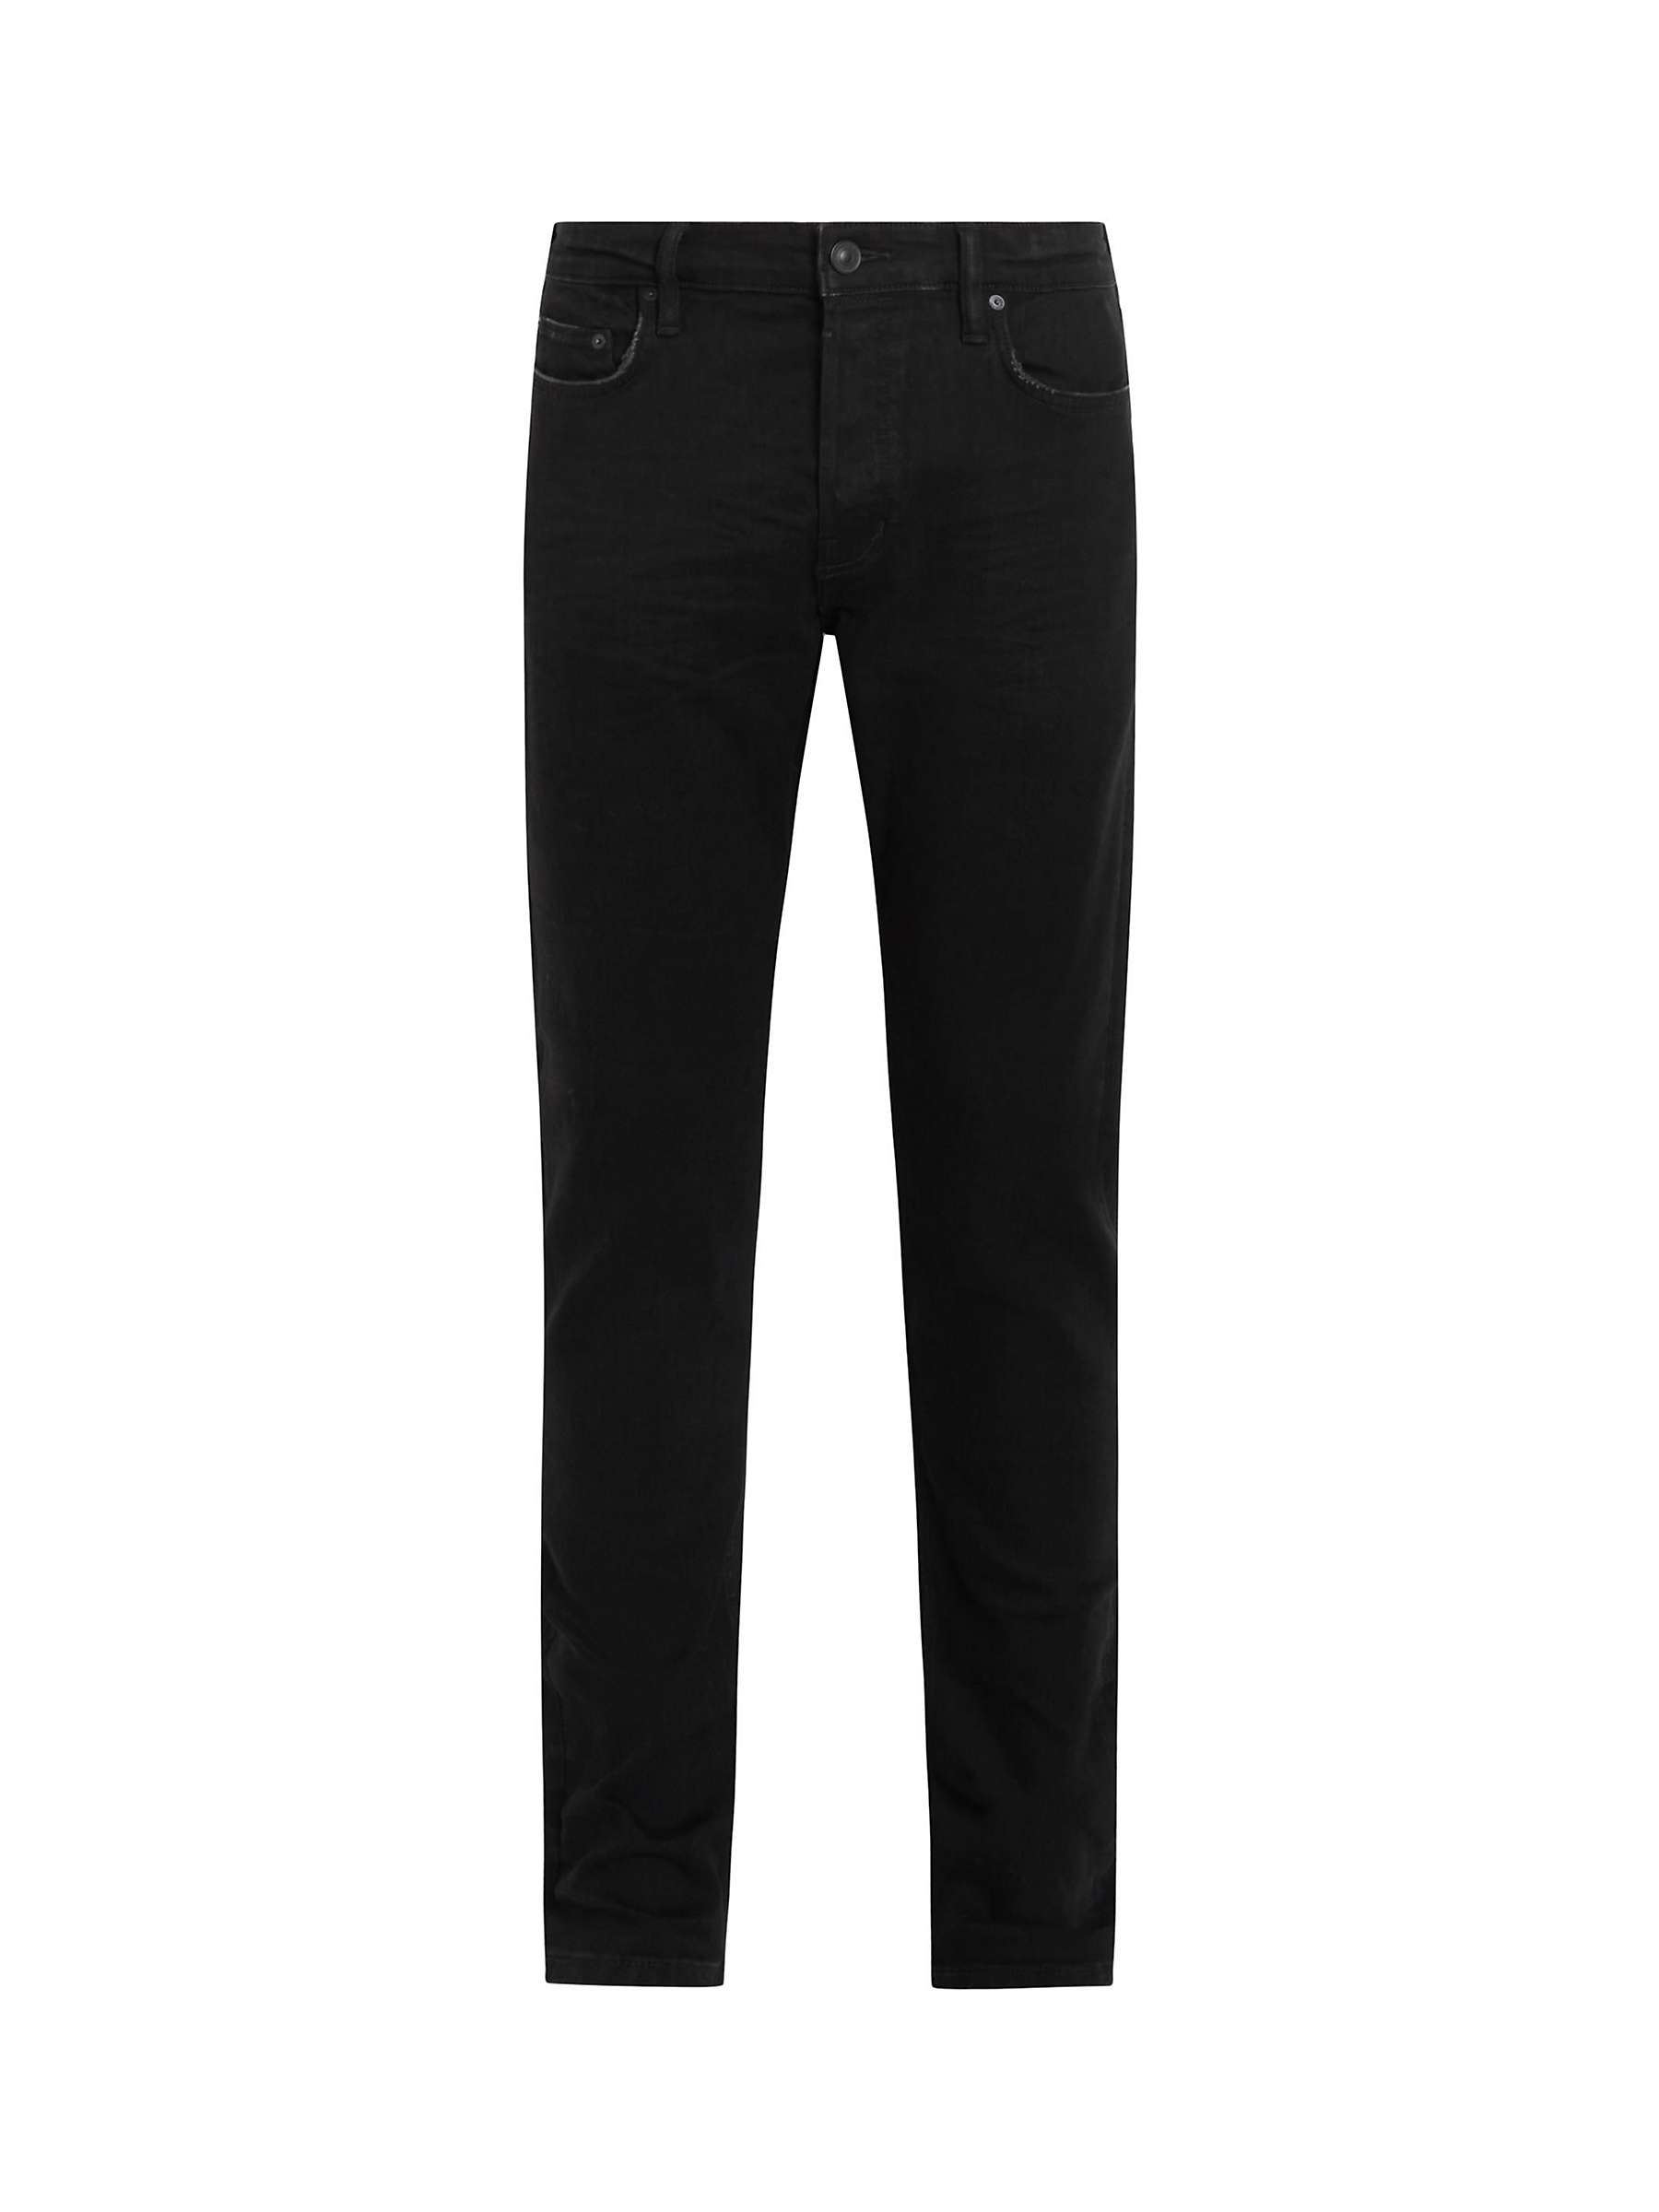 Buy AllSaints Rex Slim Jeans, Jet Black Online at johnlewis.com